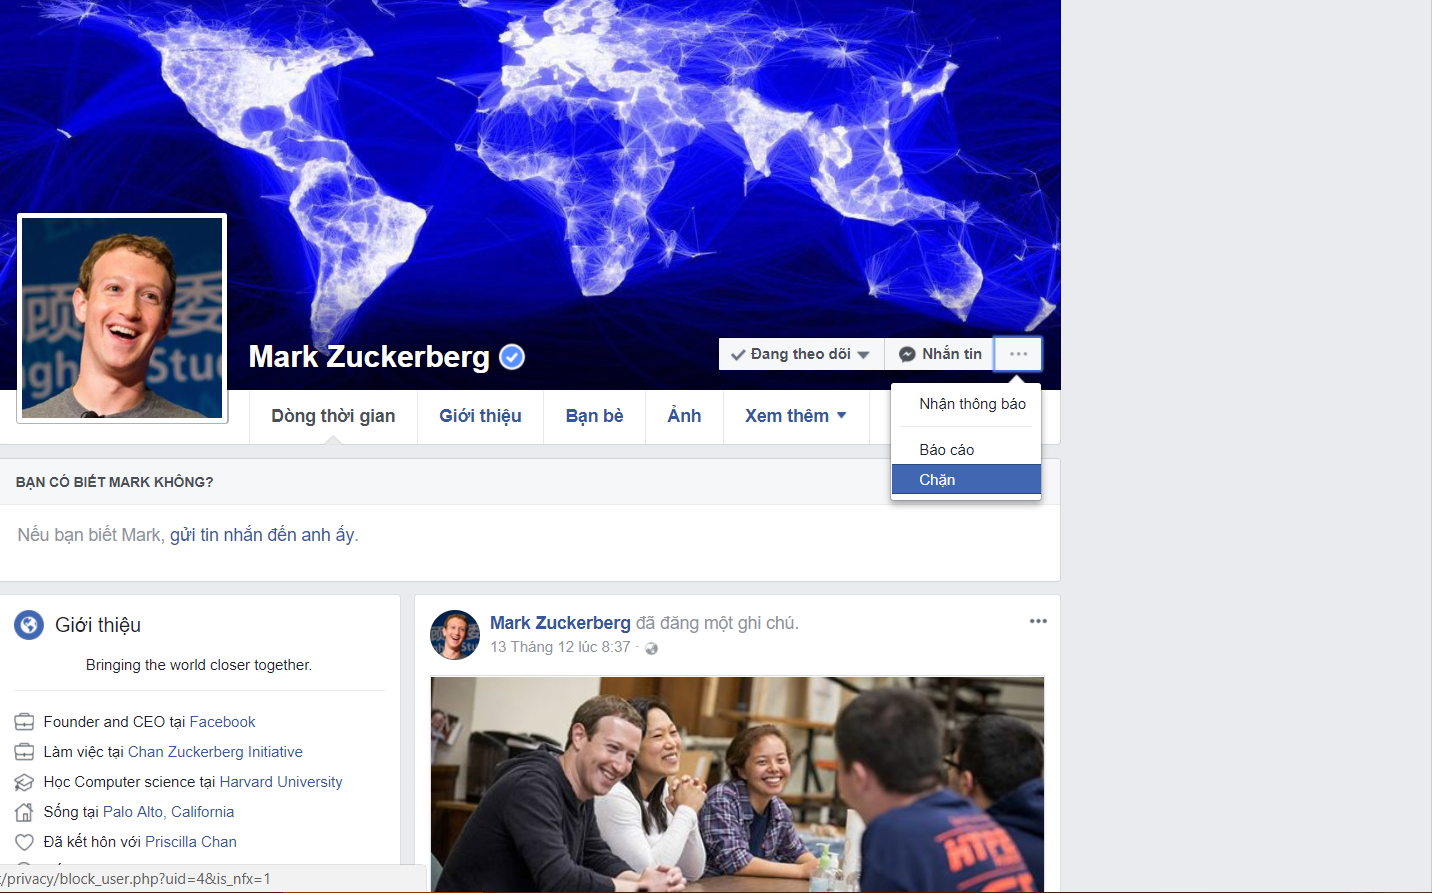 Cuối cùng bạn cũng có thể block được Mark Zuckerberg trên Facebook